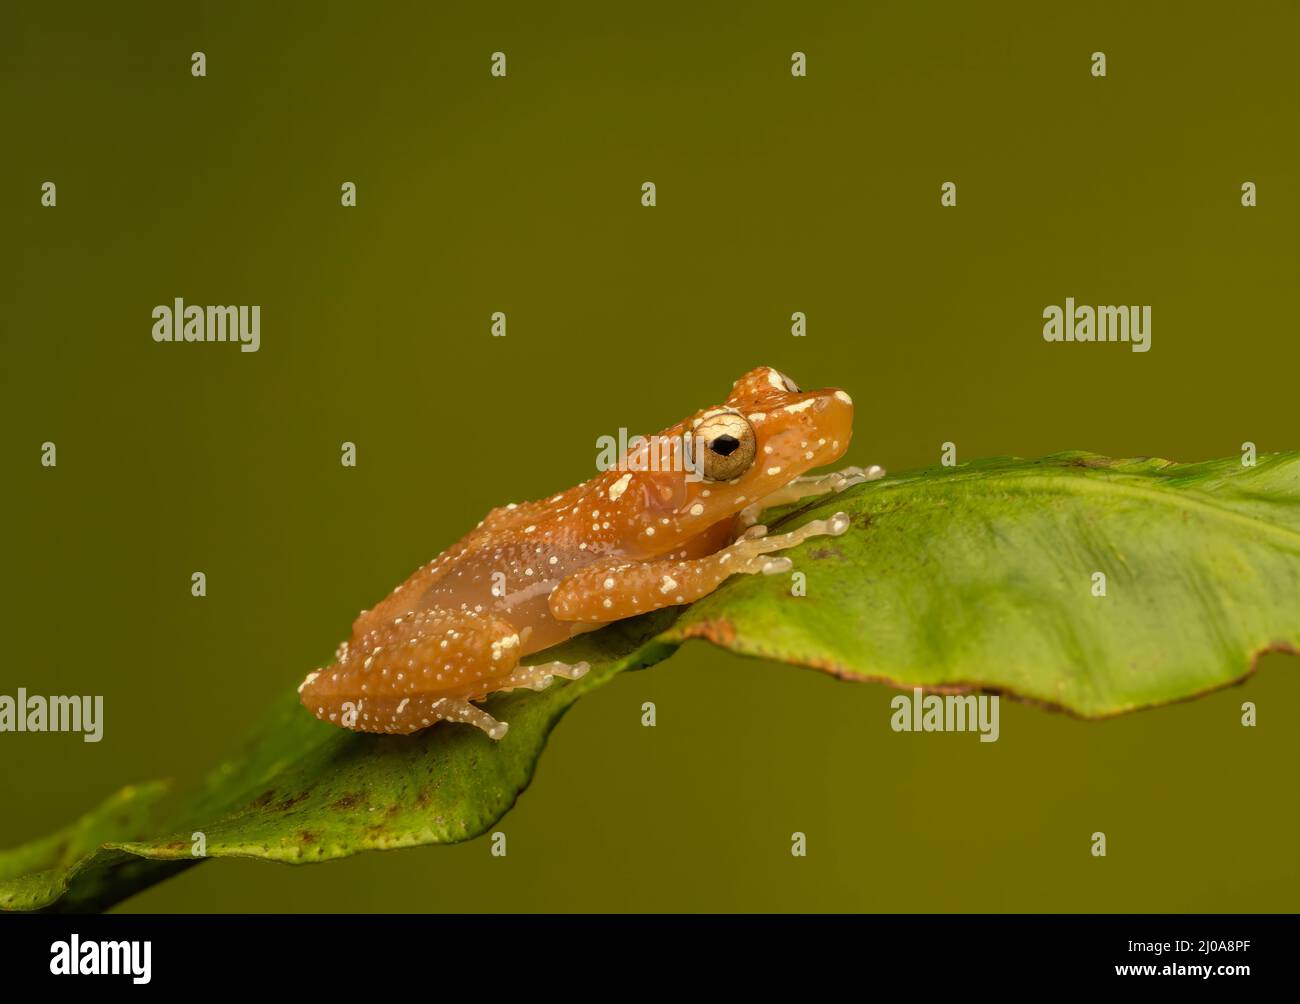 Una rana di cannella (Nyctixalus pictus), a riposo su una foglia verde fotografata su un fondo verde semplice Foto Stock